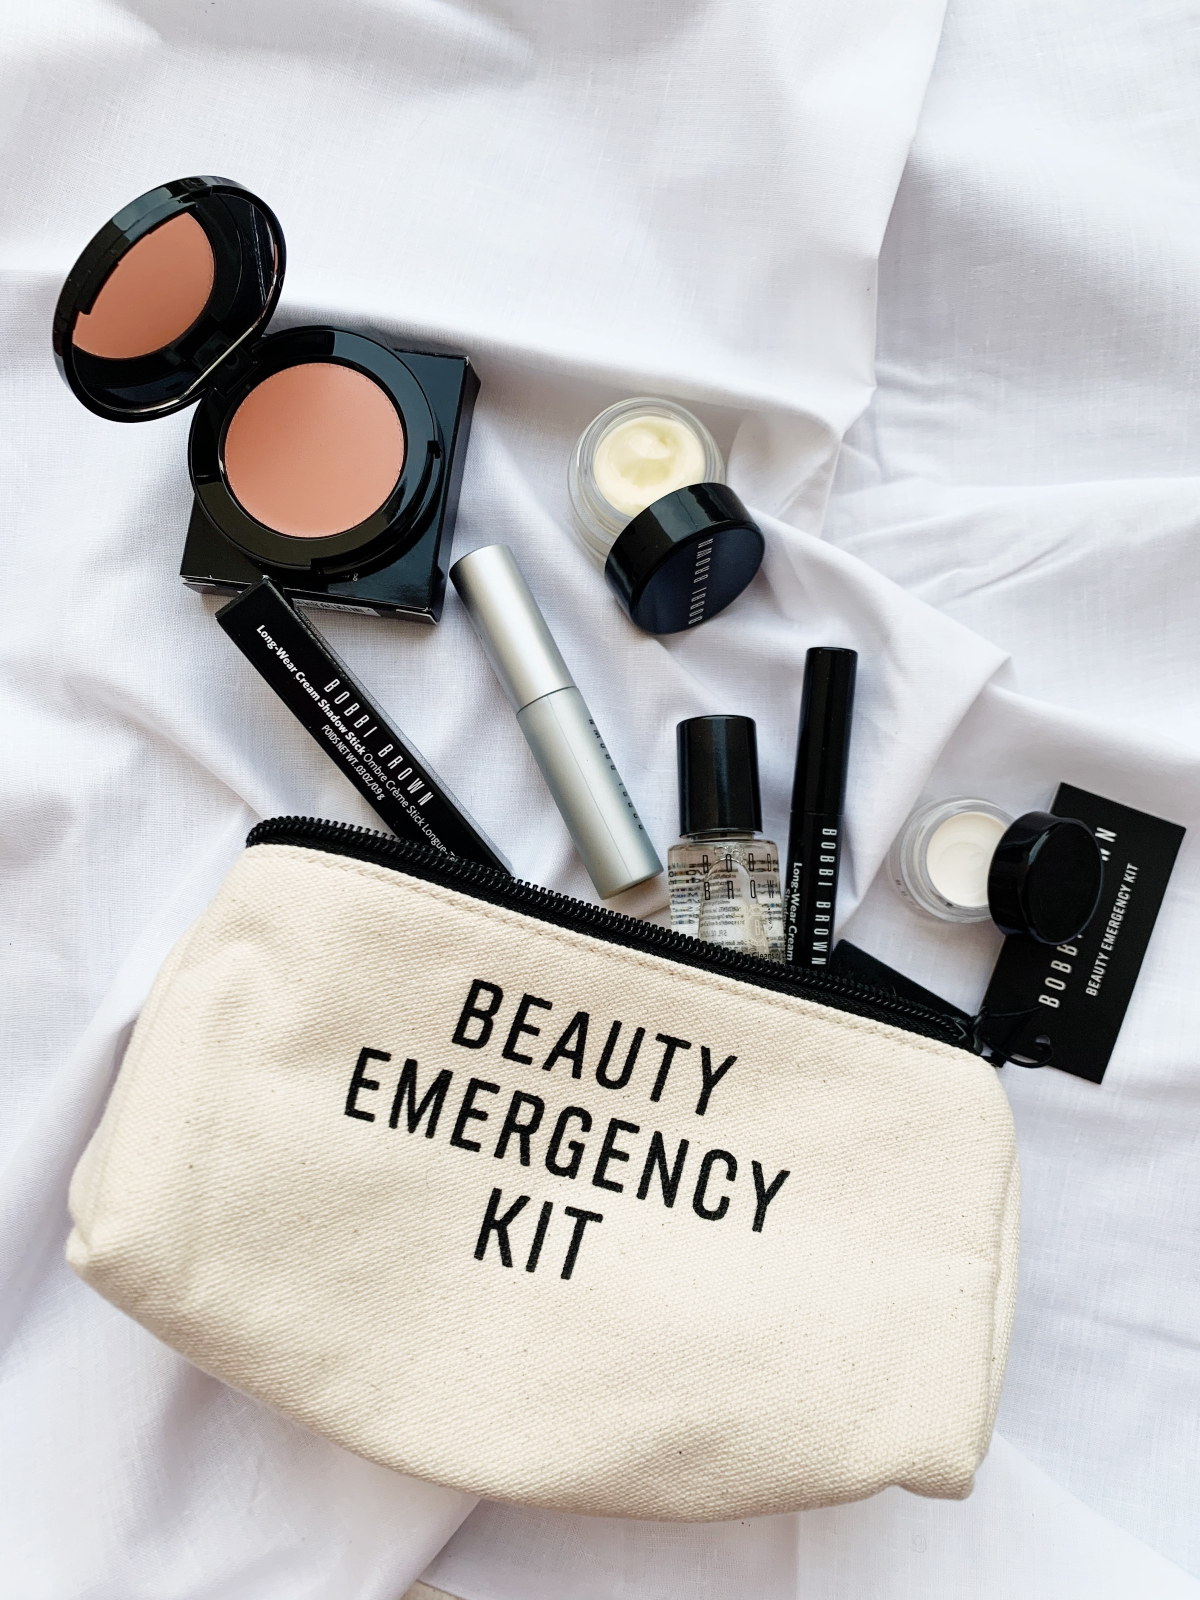 Bobbi Brown Beauty Emergency Kit 3.0 Review